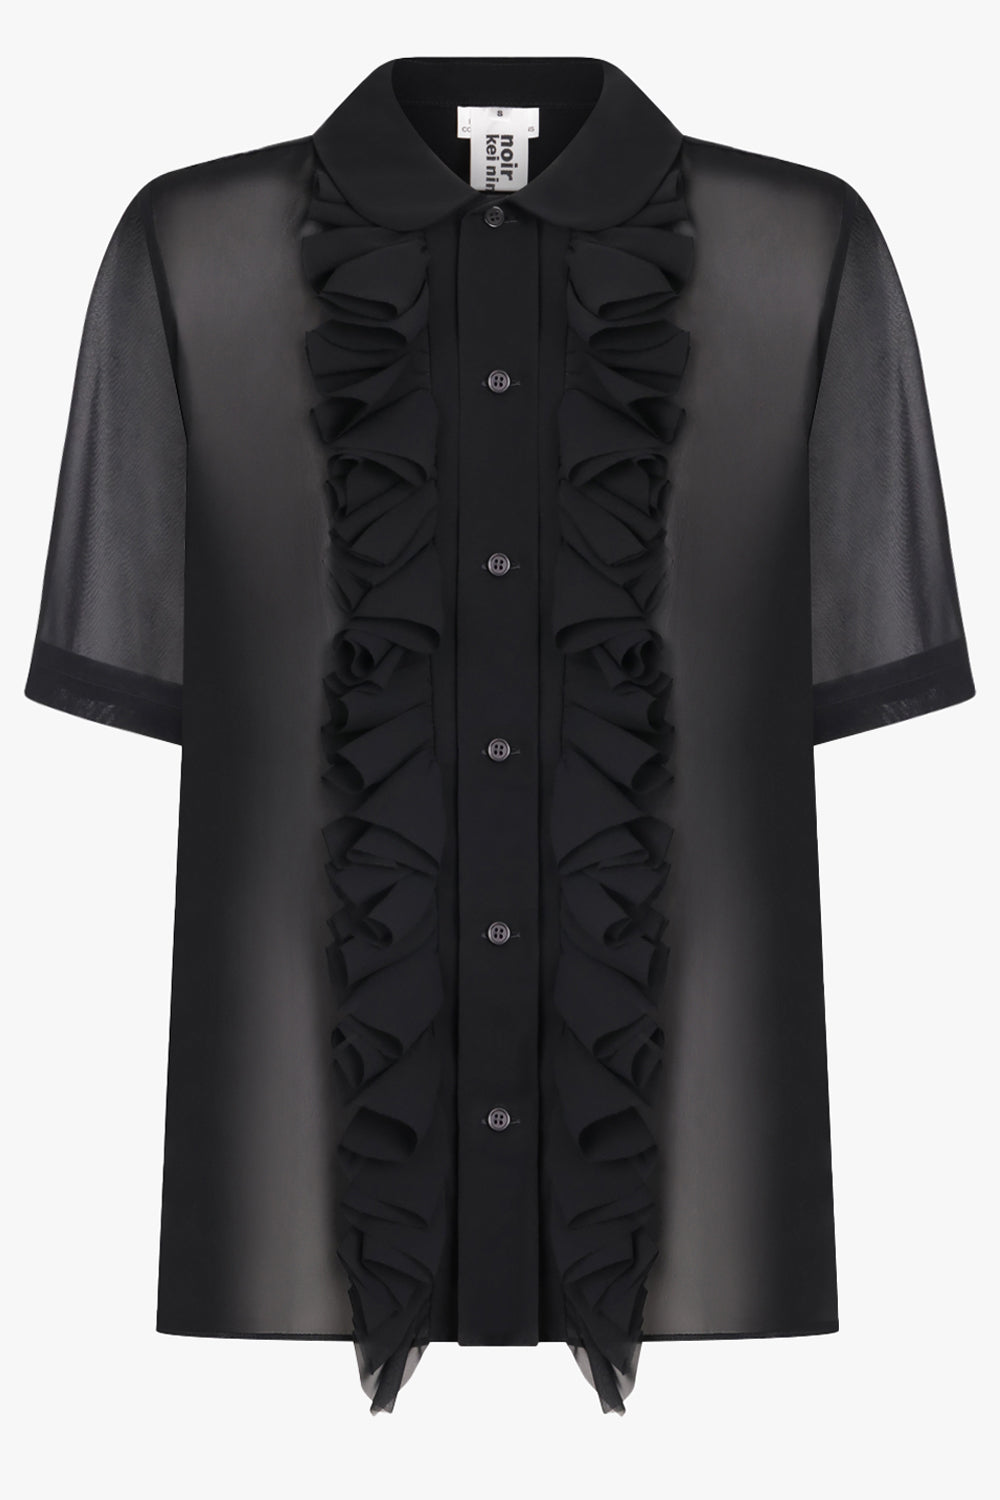 NOIR KEI NINOMIYA RTW Sheer Ruffle Detail S/S Shirt | Black